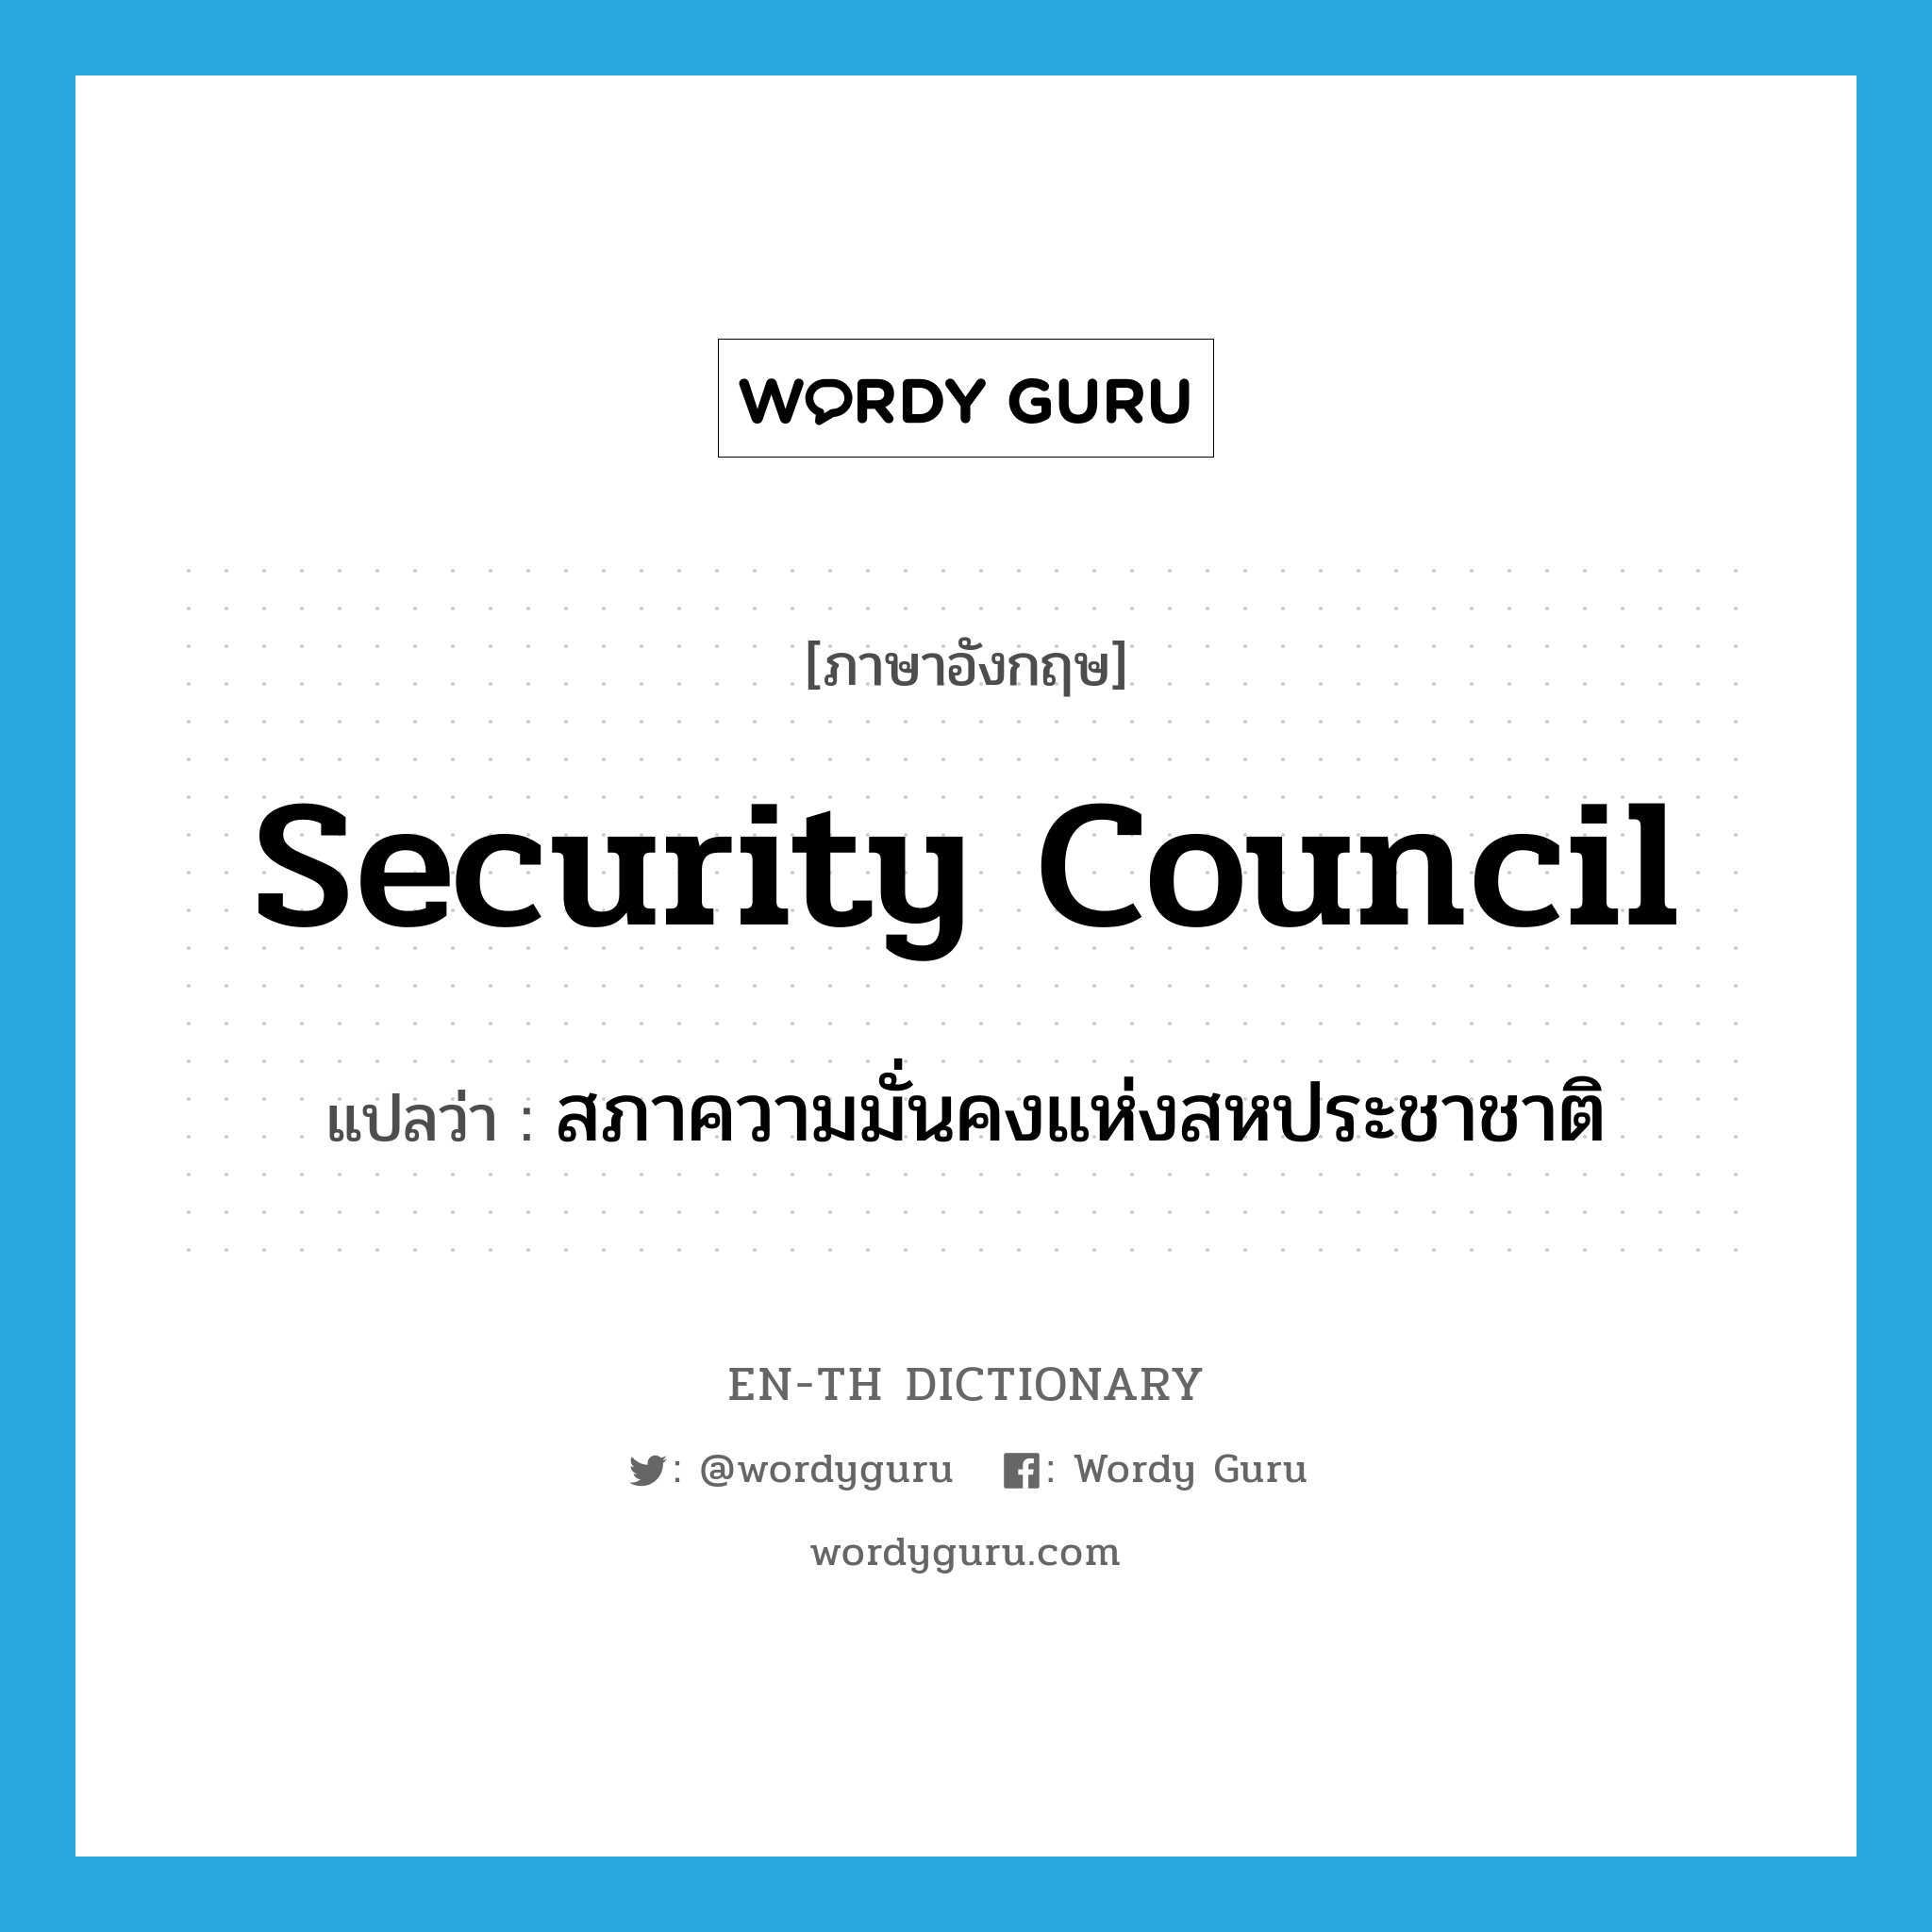 Security Council แปลว่า?, คำศัพท์ภาษาอังกฤษ Security Council แปลว่า สภาความมั่นคงแห่งสหประชาชาติ ประเภท N หมวด N